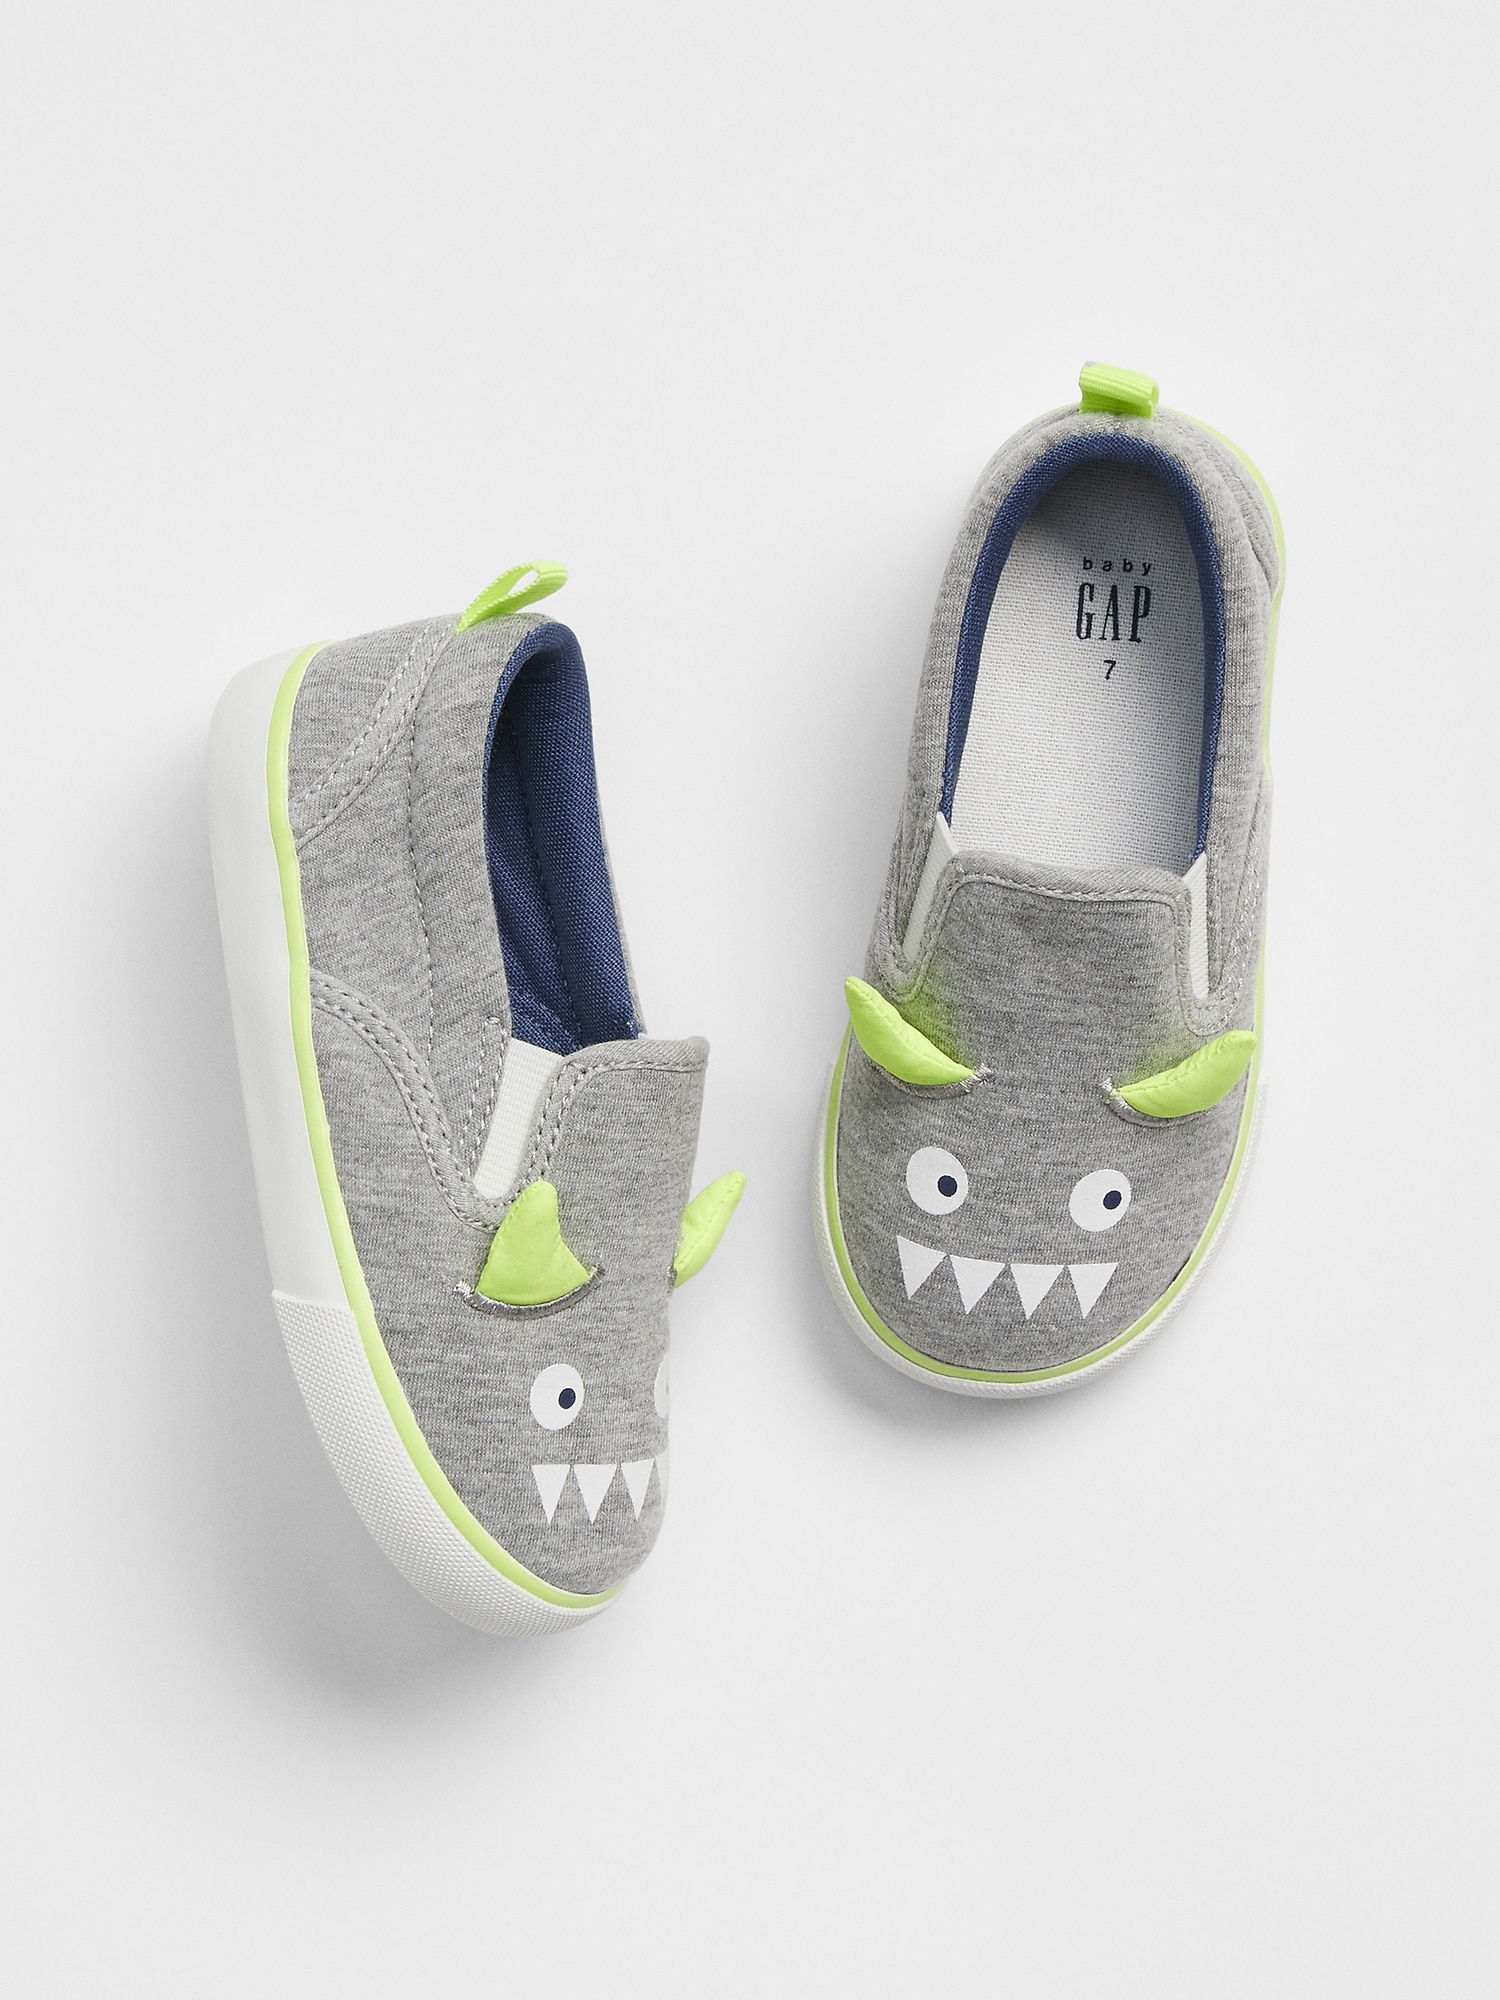 babyGap Dino Slip-On Sneakers | Gap Factory